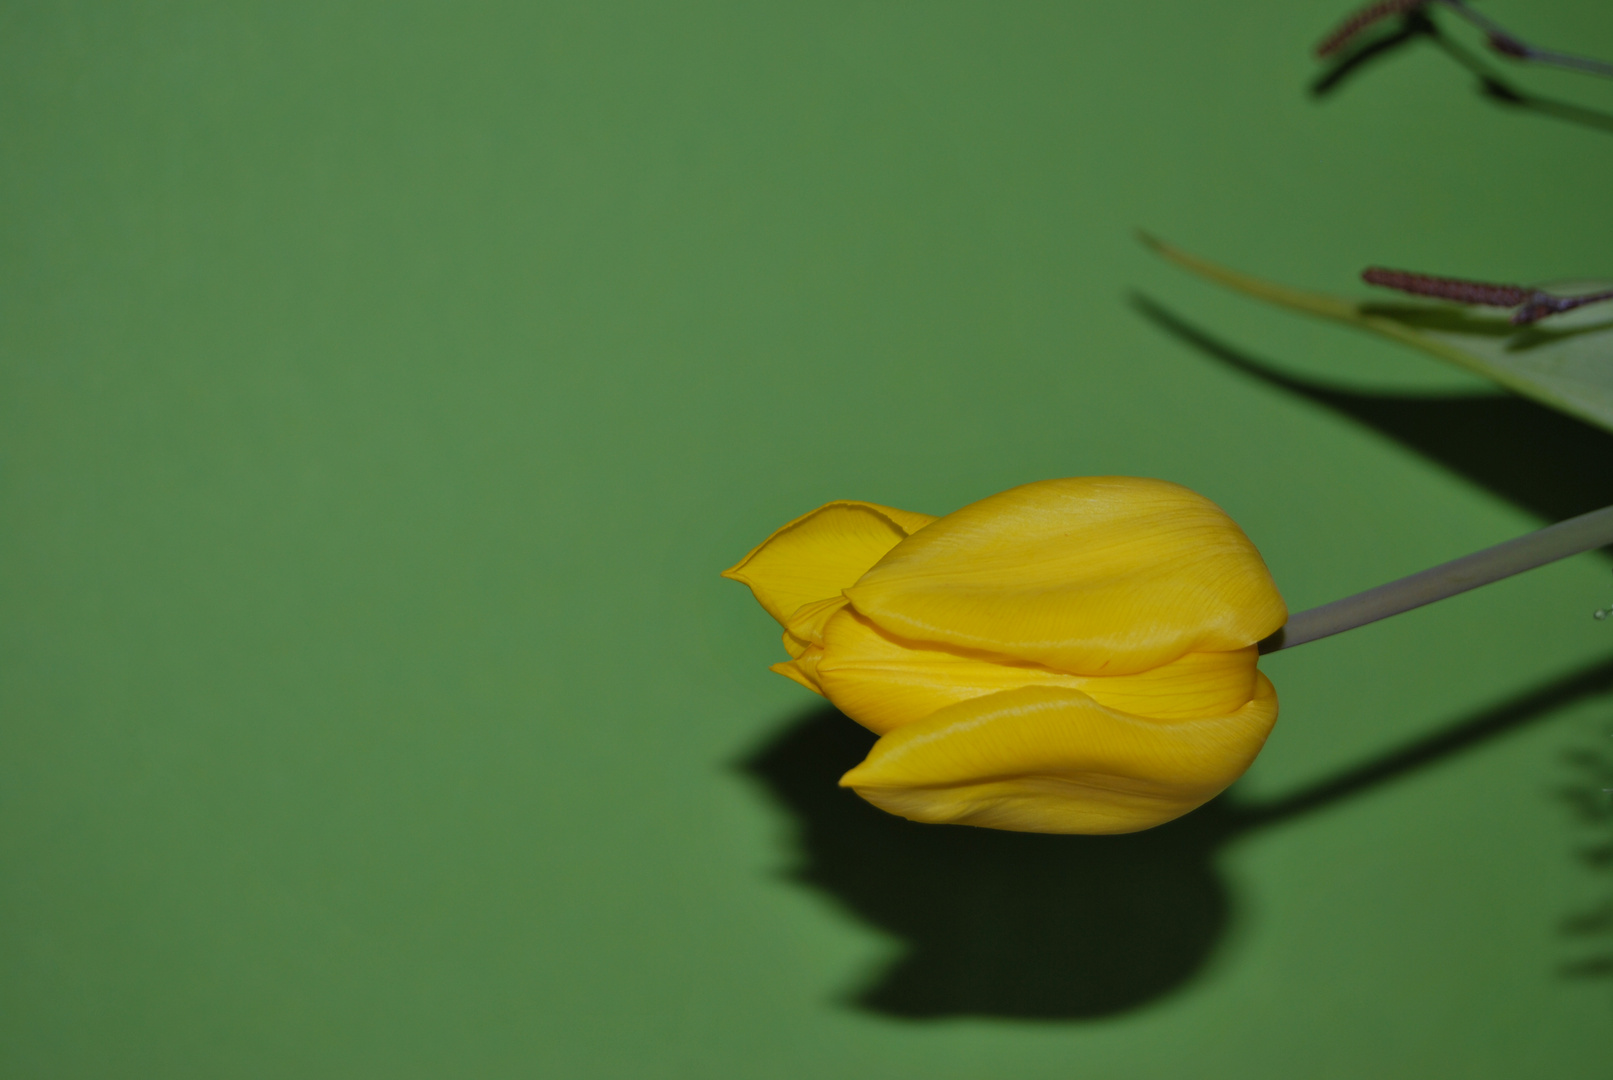 Tulpe mit Schatten